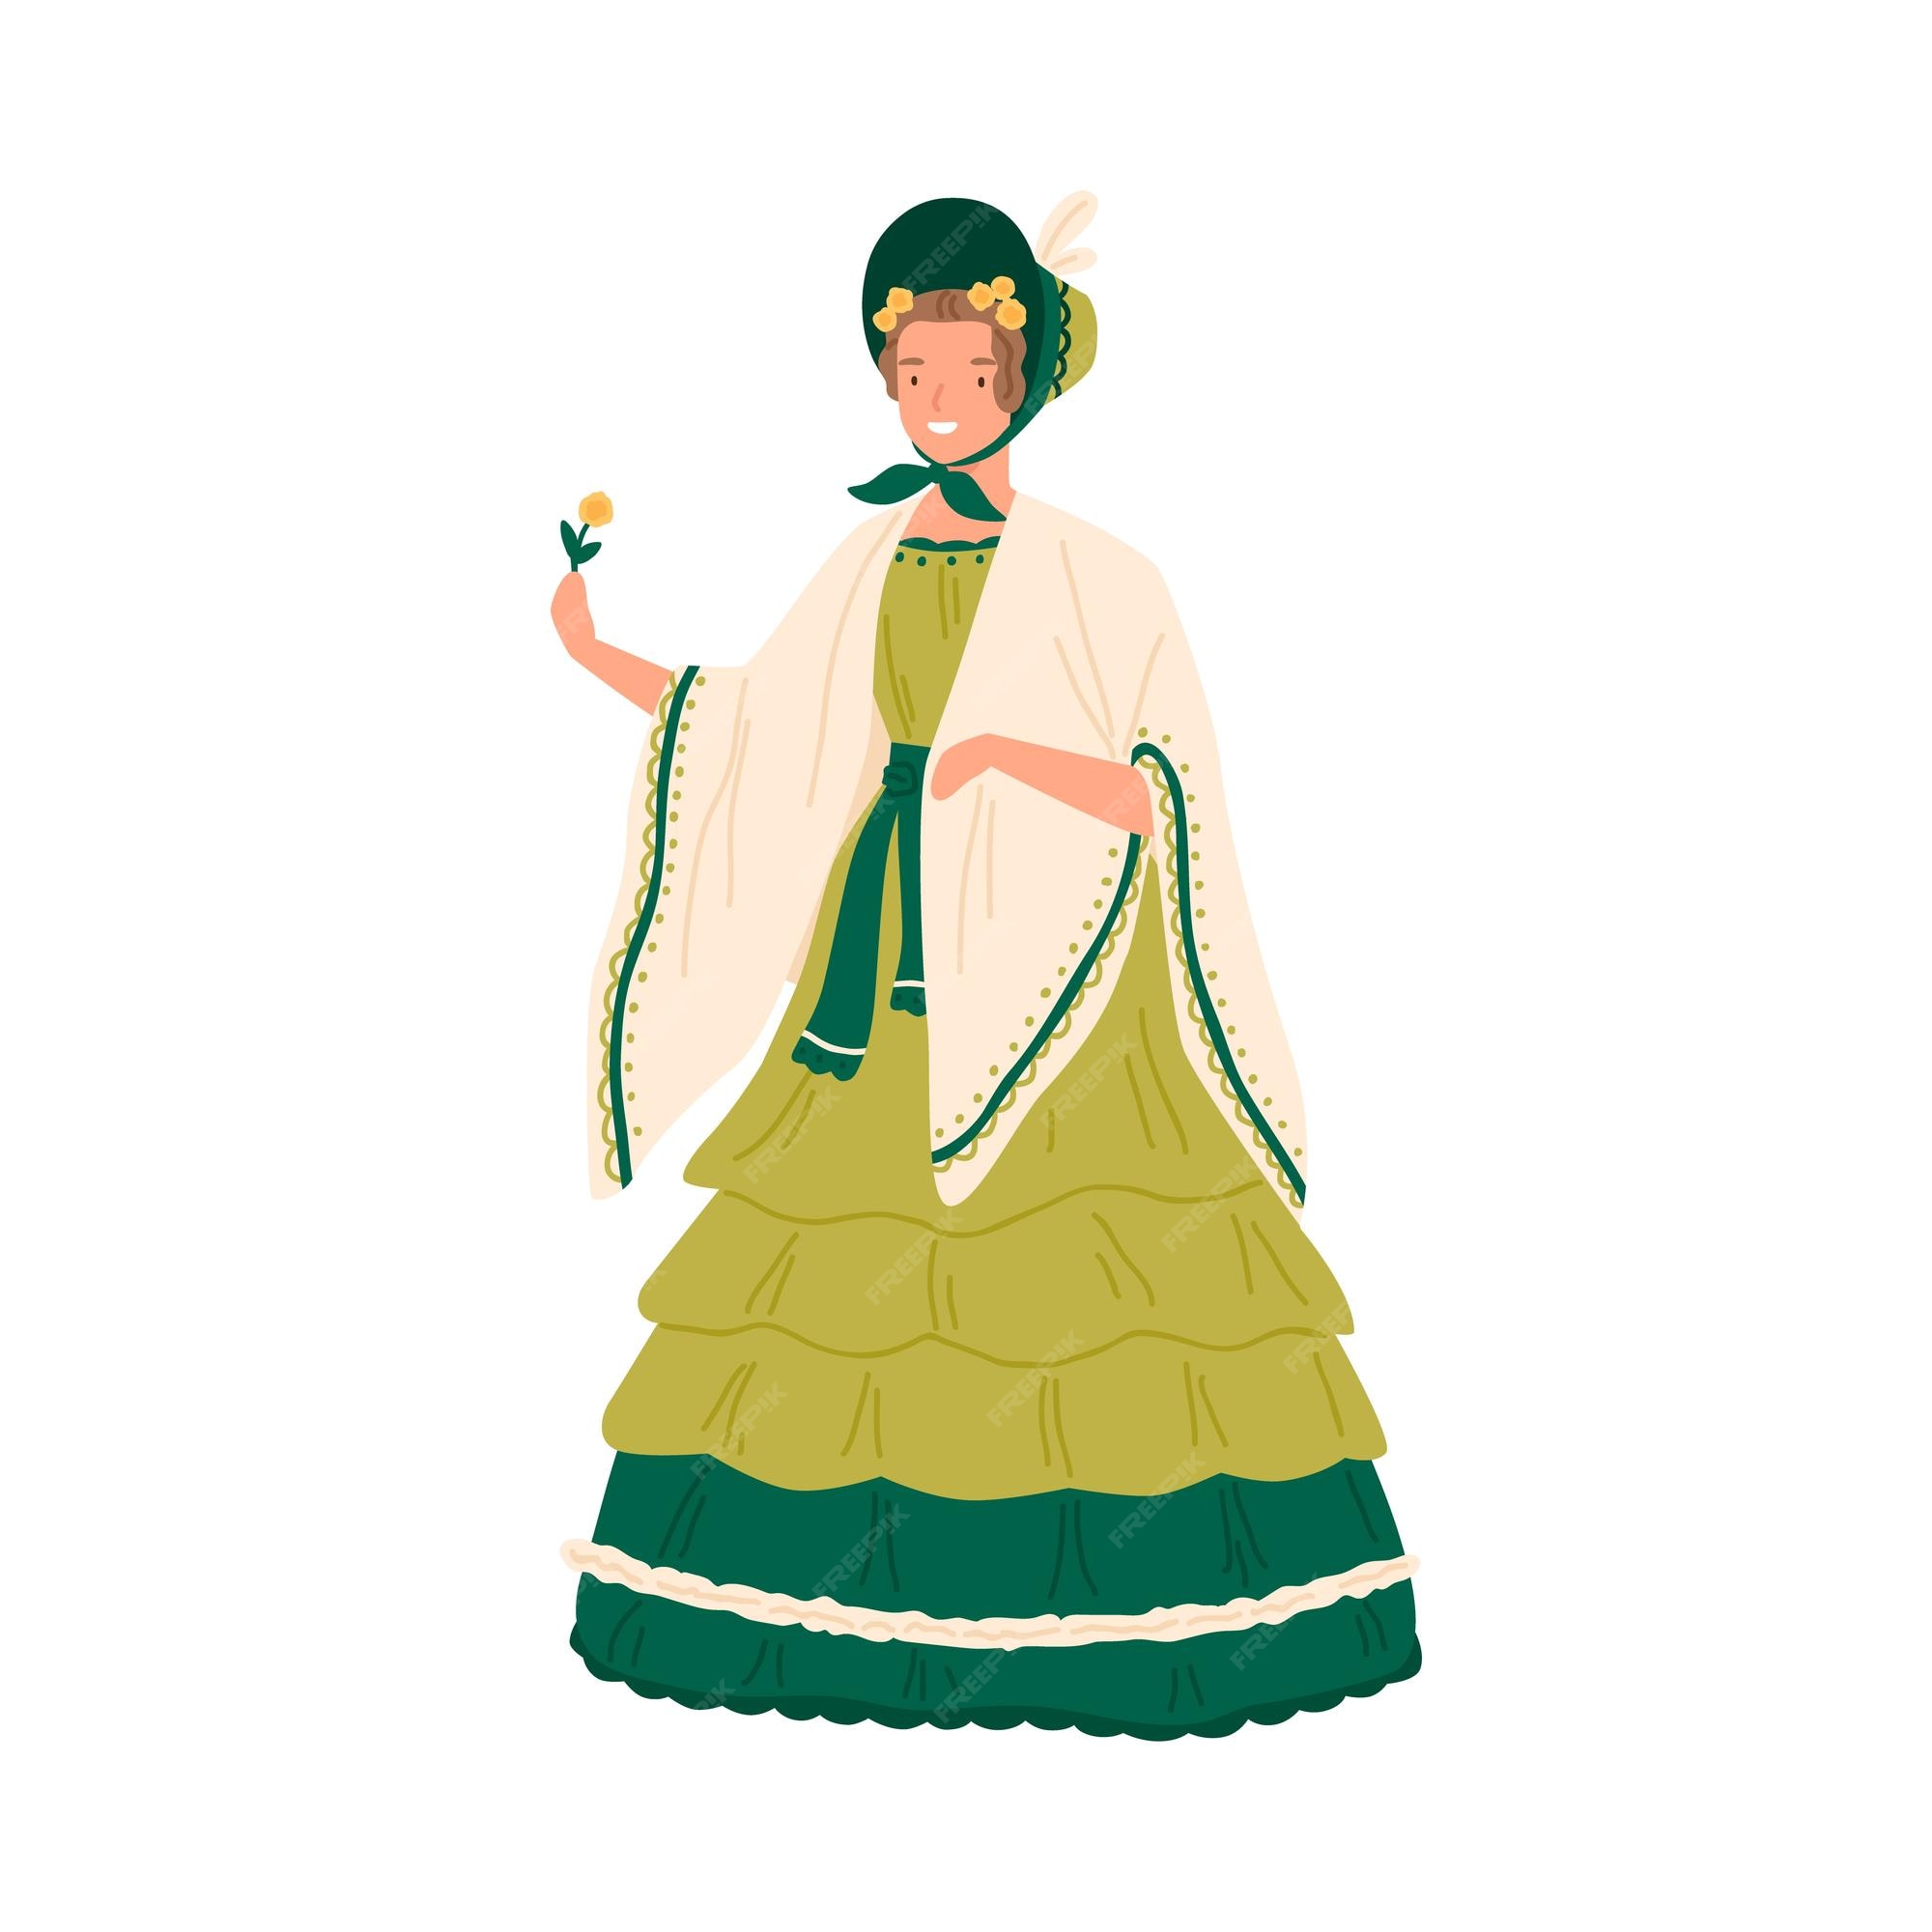 Mujer joven de época con vestido retro y sombrero decorado con volantes al  estilo de la década de 1830. personaje femenino con elegante ropa barroca.  ilustración de dibujos animados de vector plano